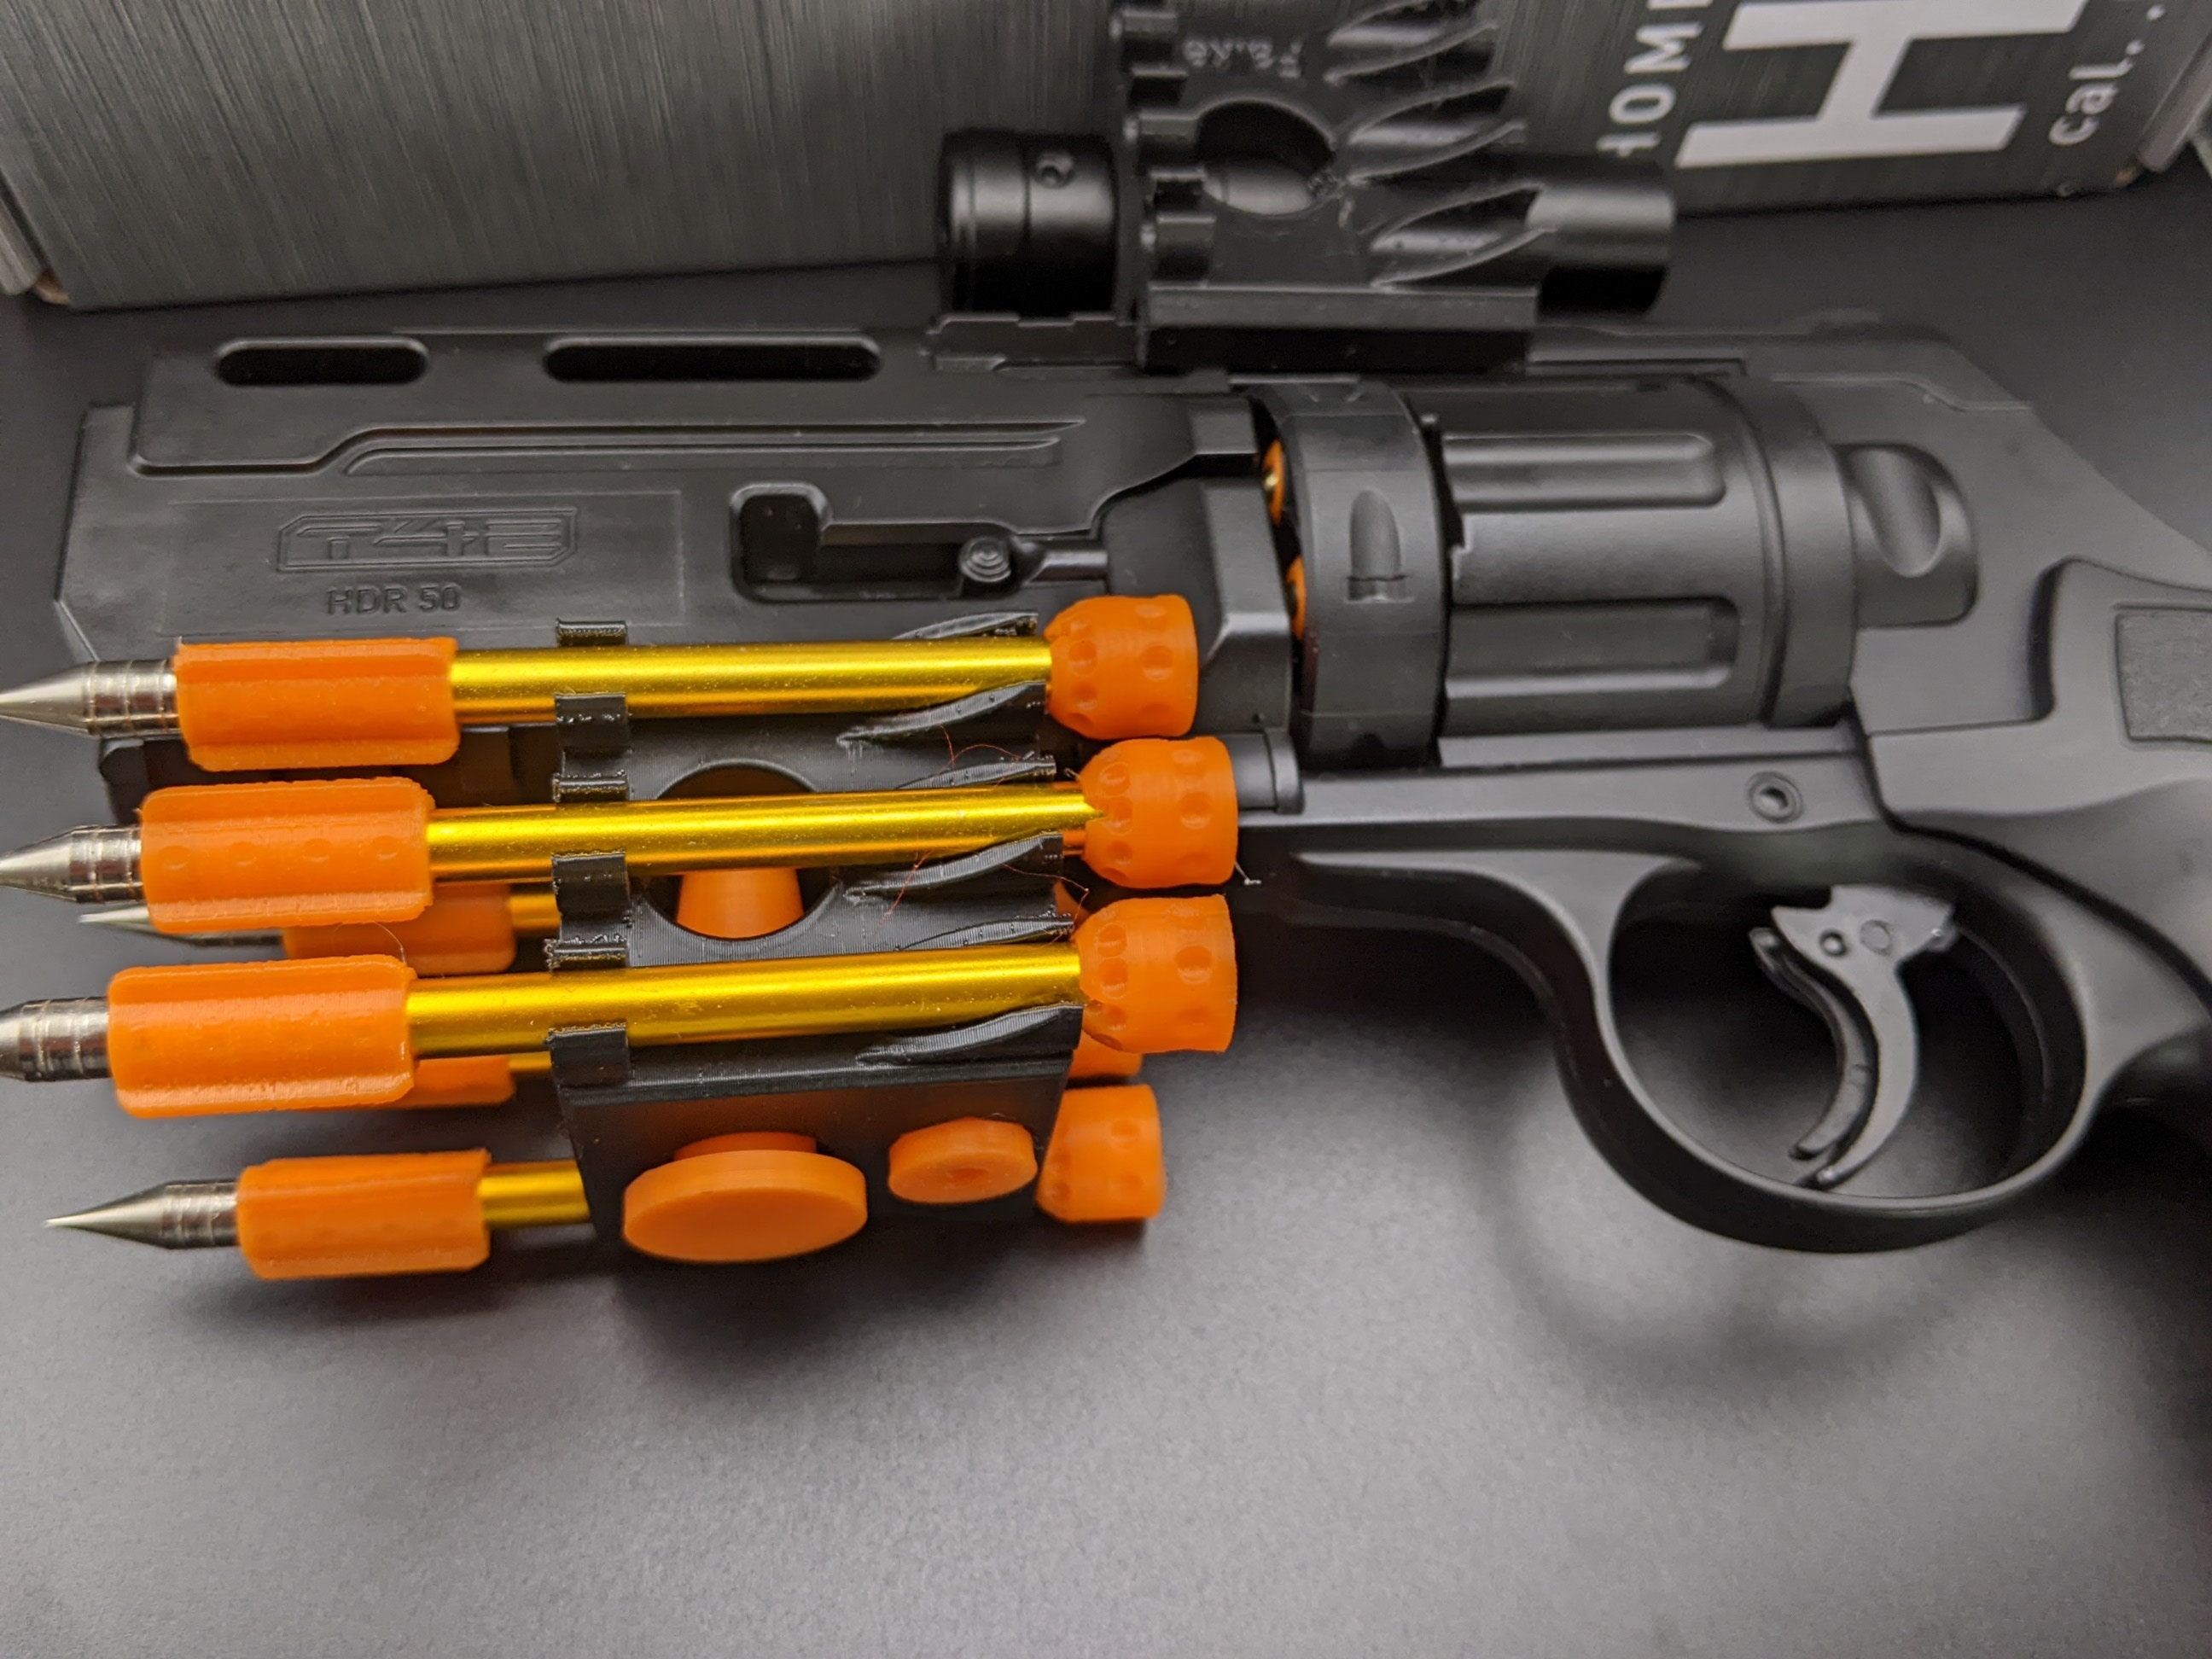 Montaje en pared para revólver UMAREX T4E HDR50 -  España